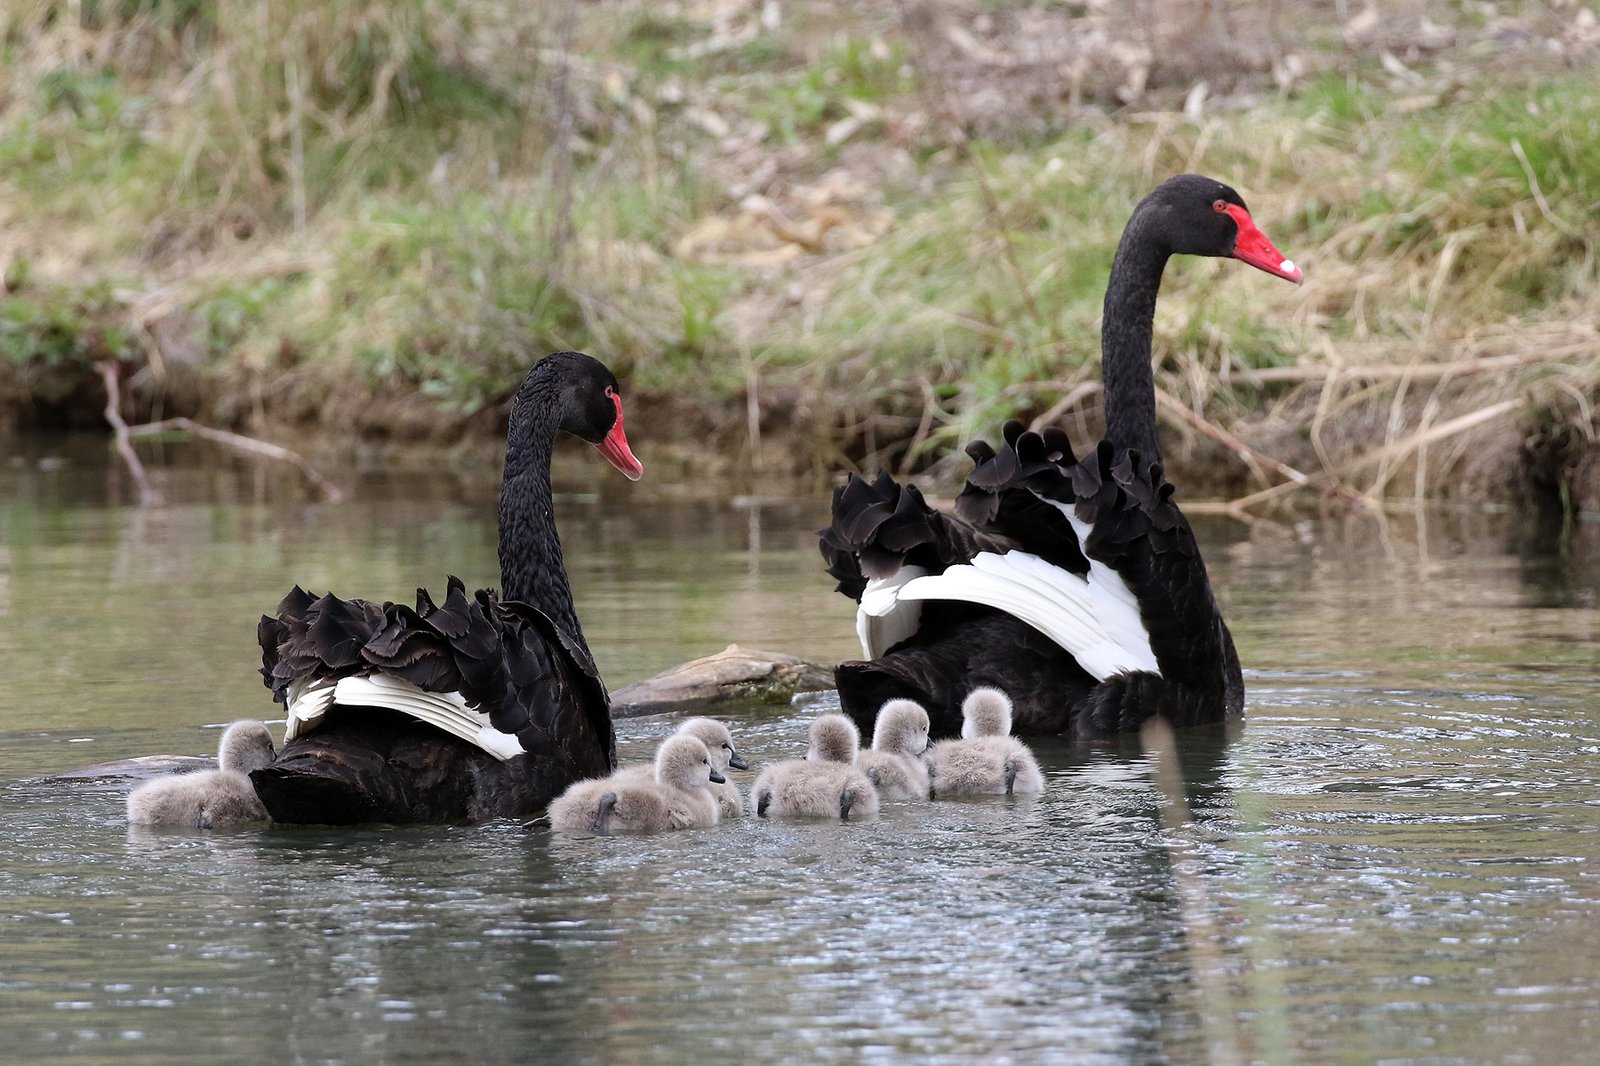 Pair of Black Swans (Cygnus atratus) with cygnets in water